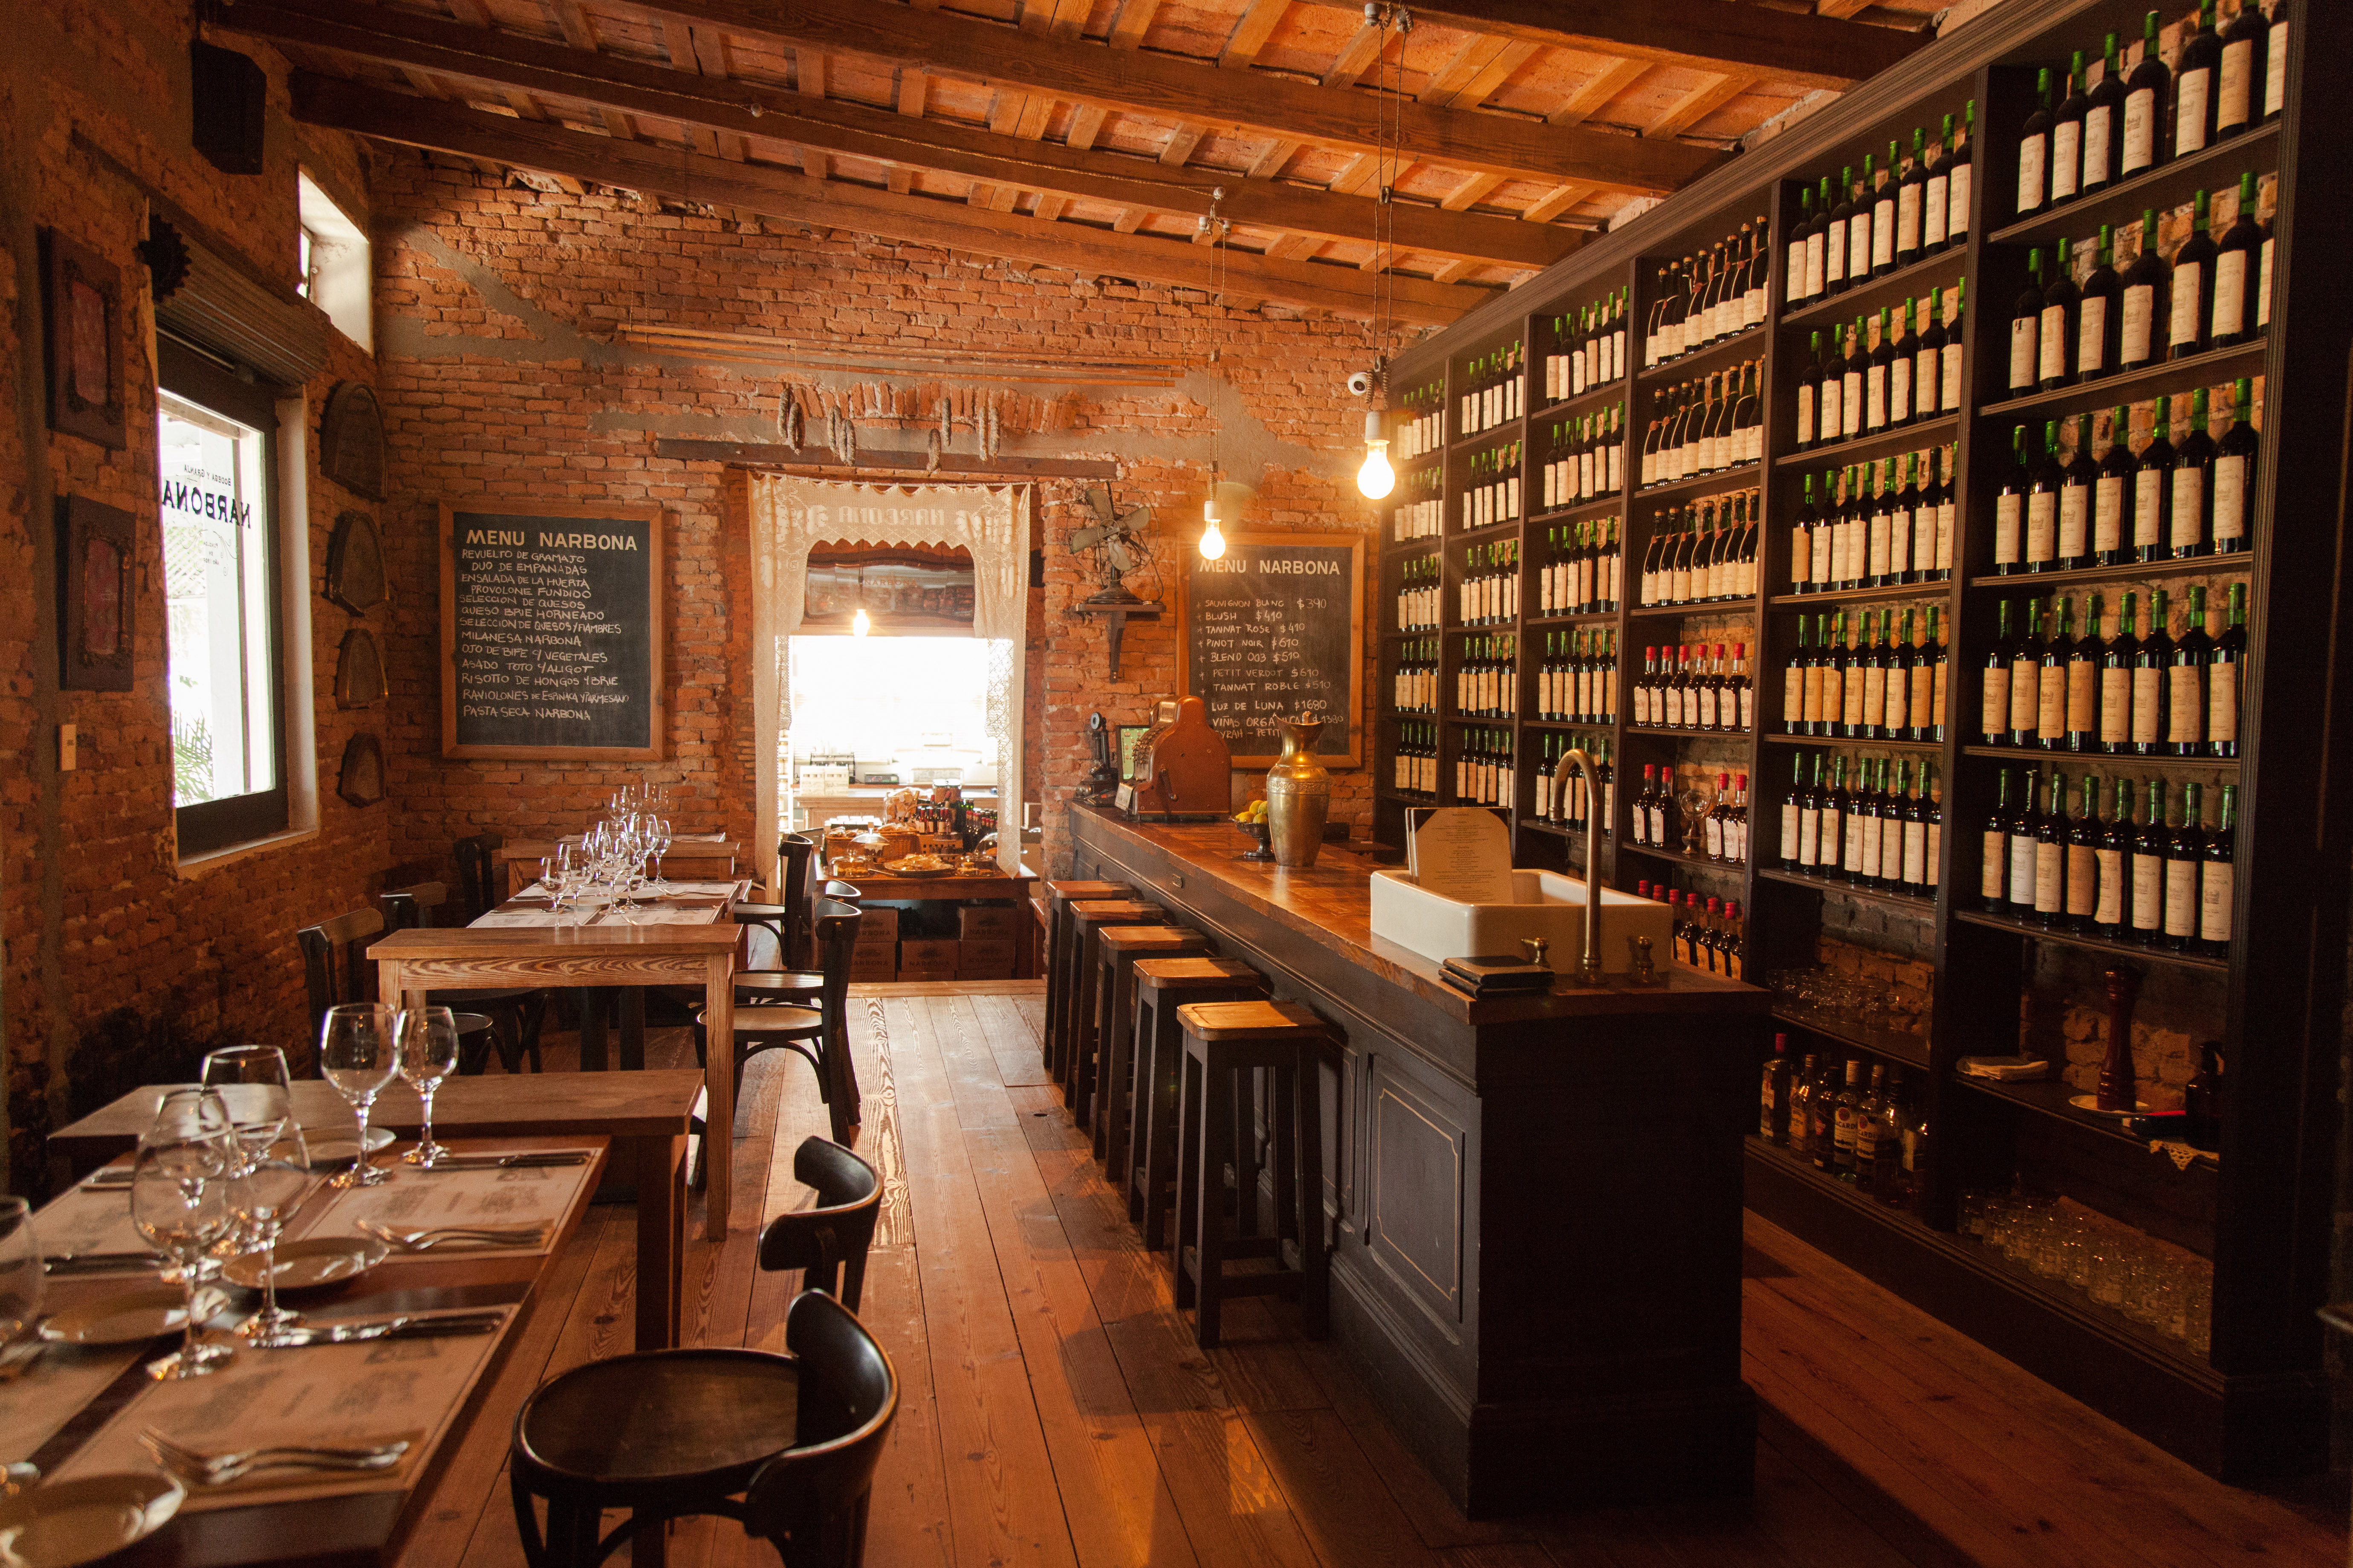 El restaurante de la Bodega Narbona abunda en madera y es el lugar indicado para degustar los vinos locales.